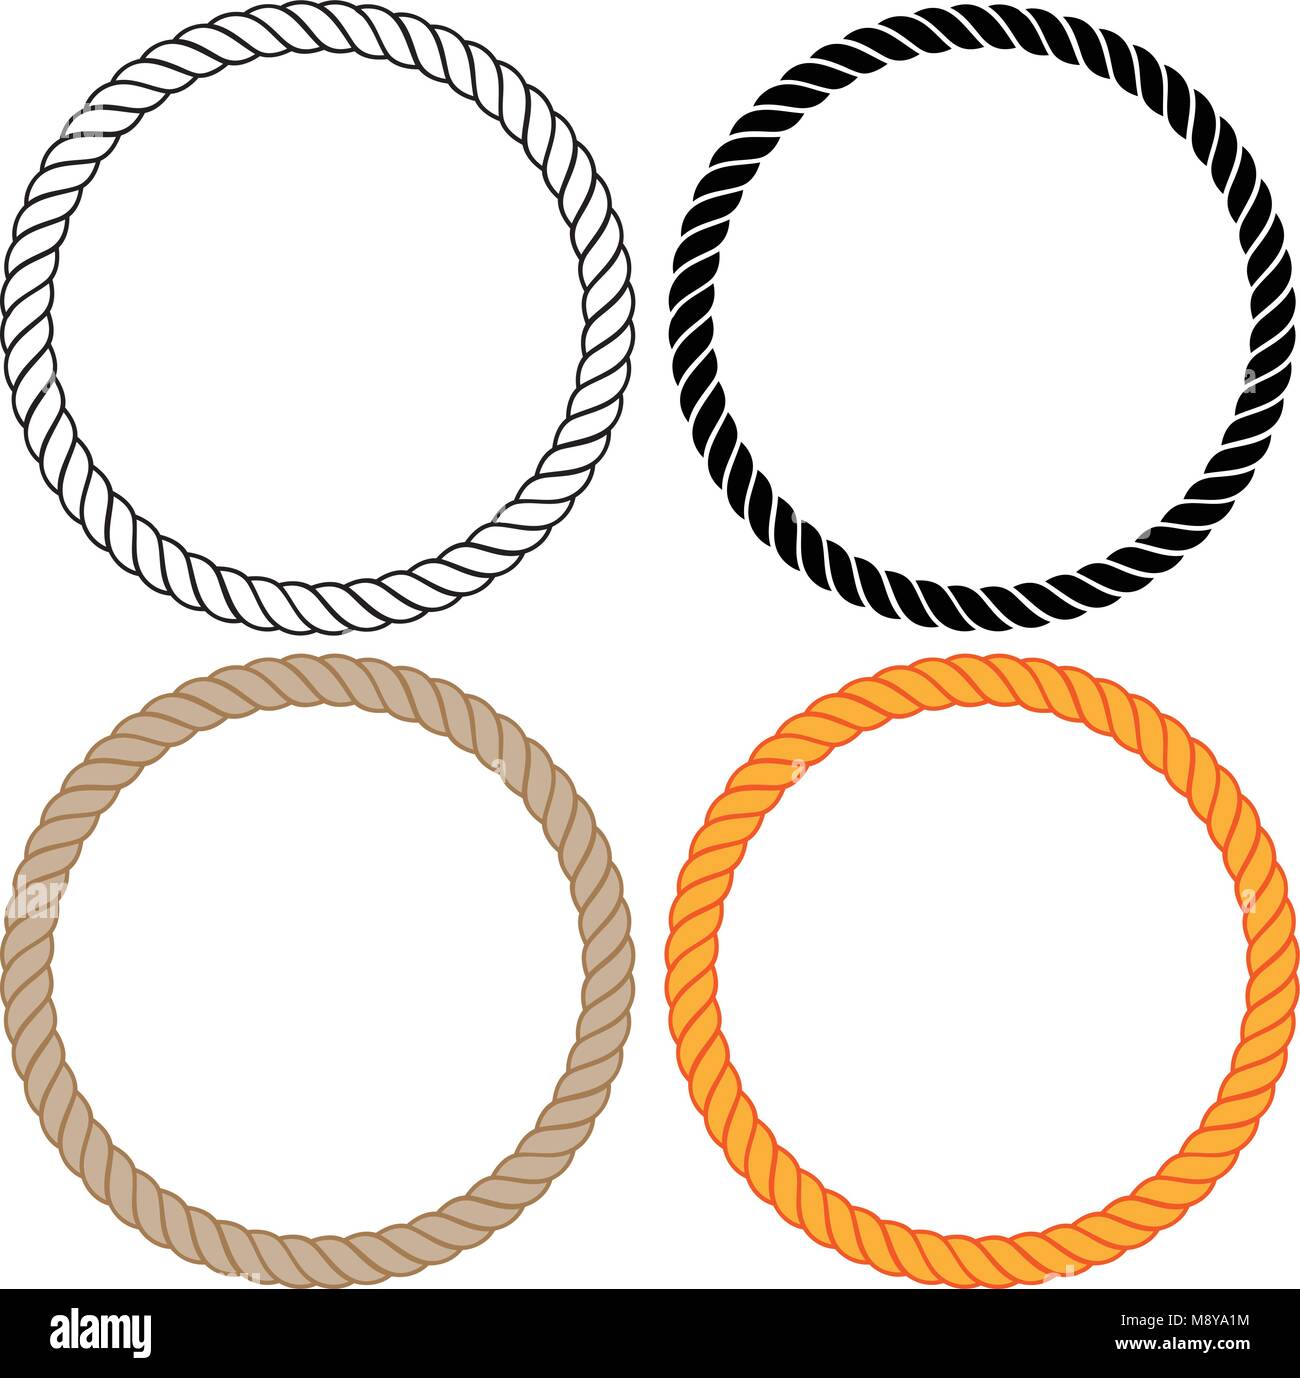 Les cercles de corde tressée vector illustration Illustration de Vecteur